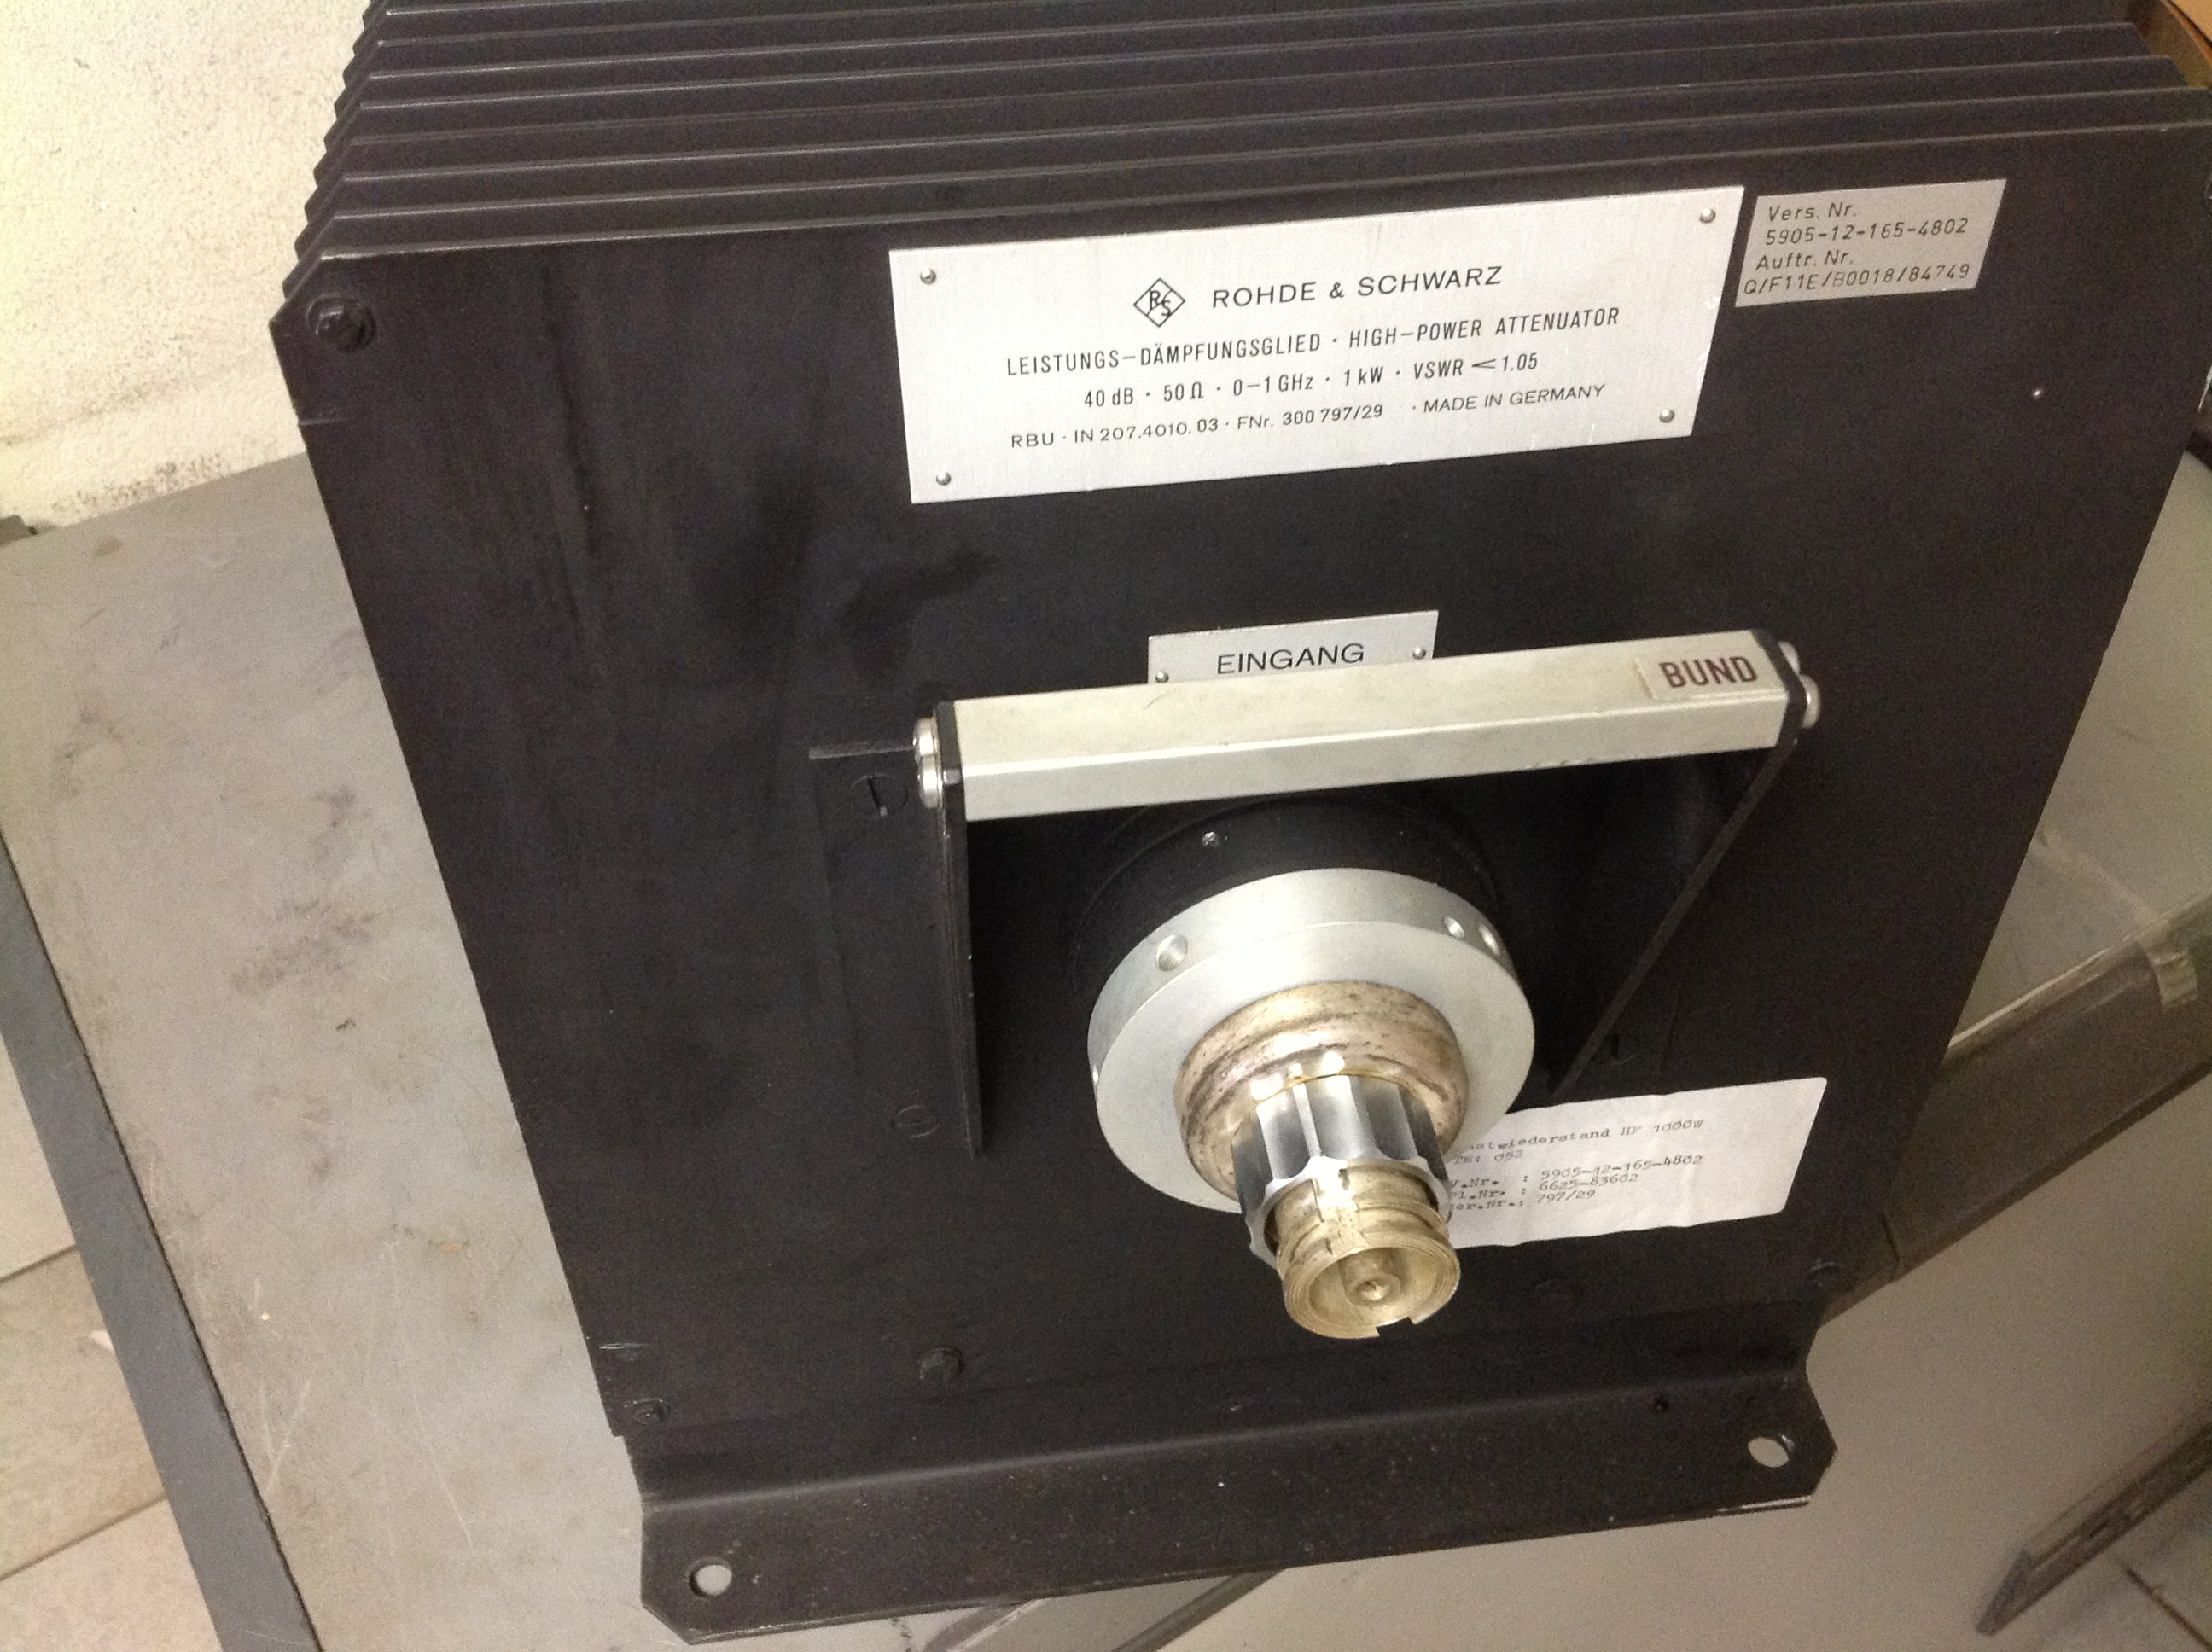 Rohde &amp; Schwarz 1 KW Leistungs-Dämpfungsglied . High-Power Attenuator